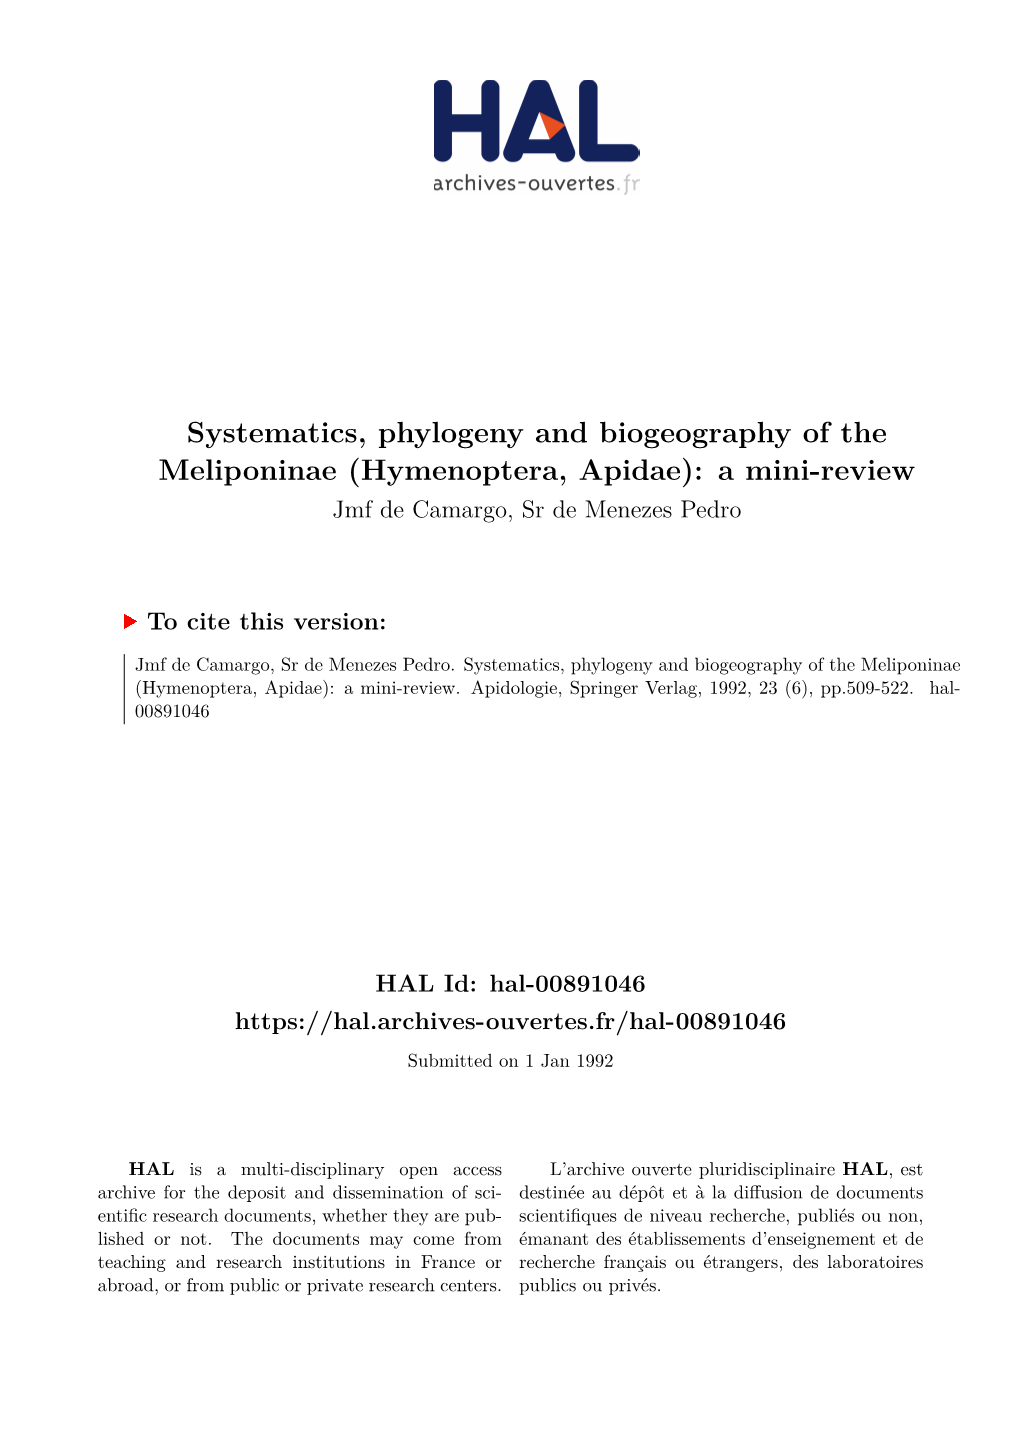 Systematics, Phylogeny and Biogeography of the Meliponinae (Hymenoptera, Apidae): a Mini-Review Jmf De Camargo, Sr De Menezes Pedro